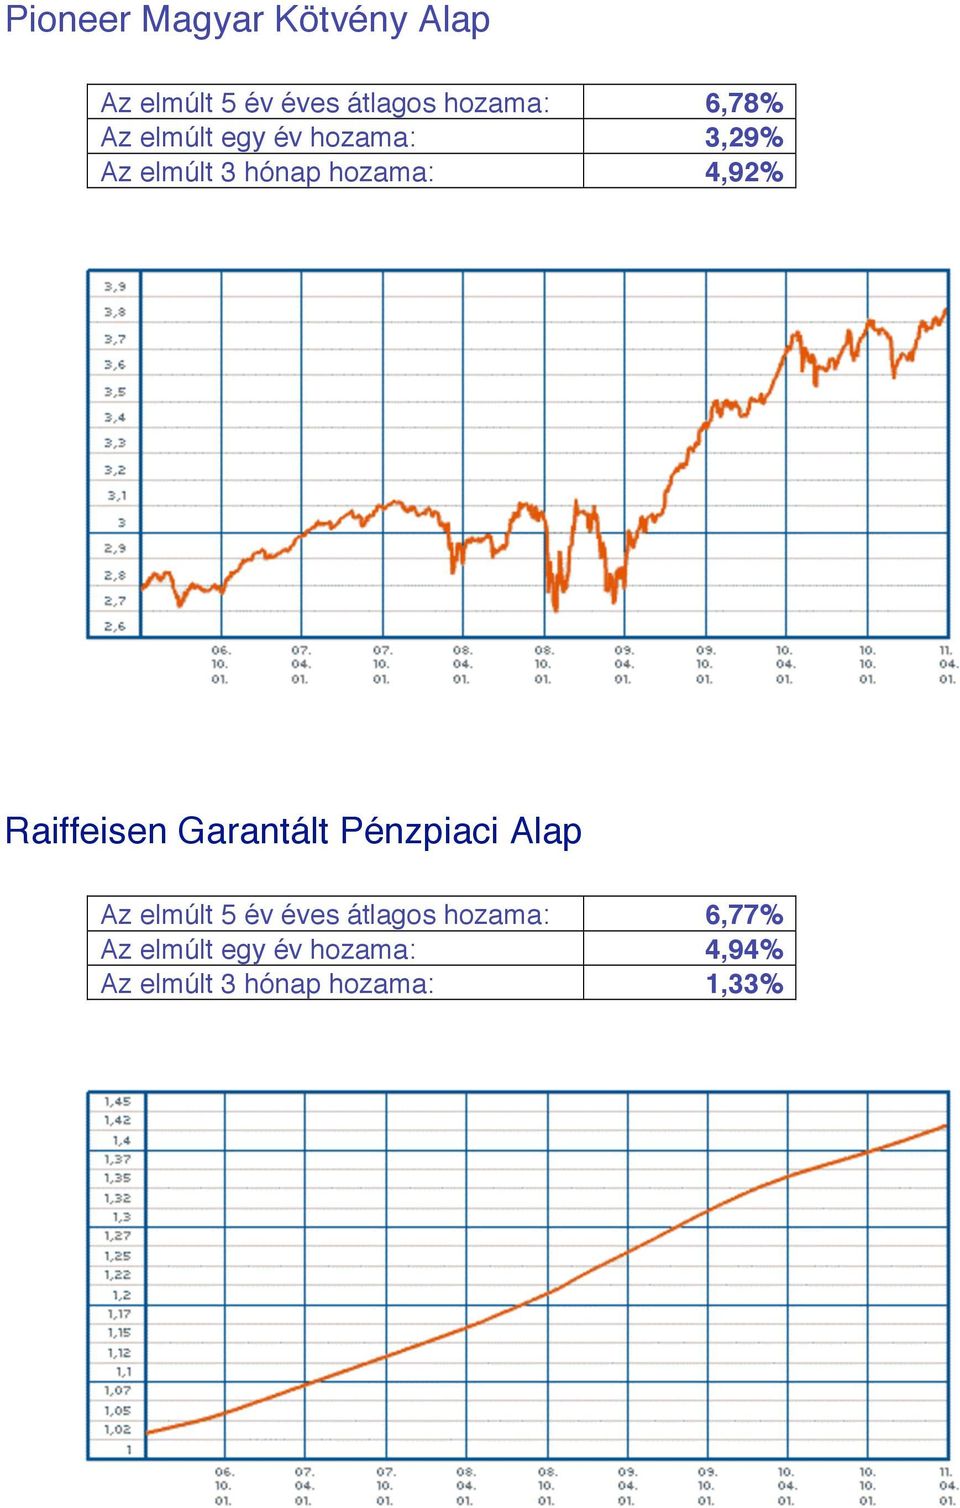 Raiffeisen Garantált Pénzpiaci Alap Az elmúlt 5 év éves átlagos